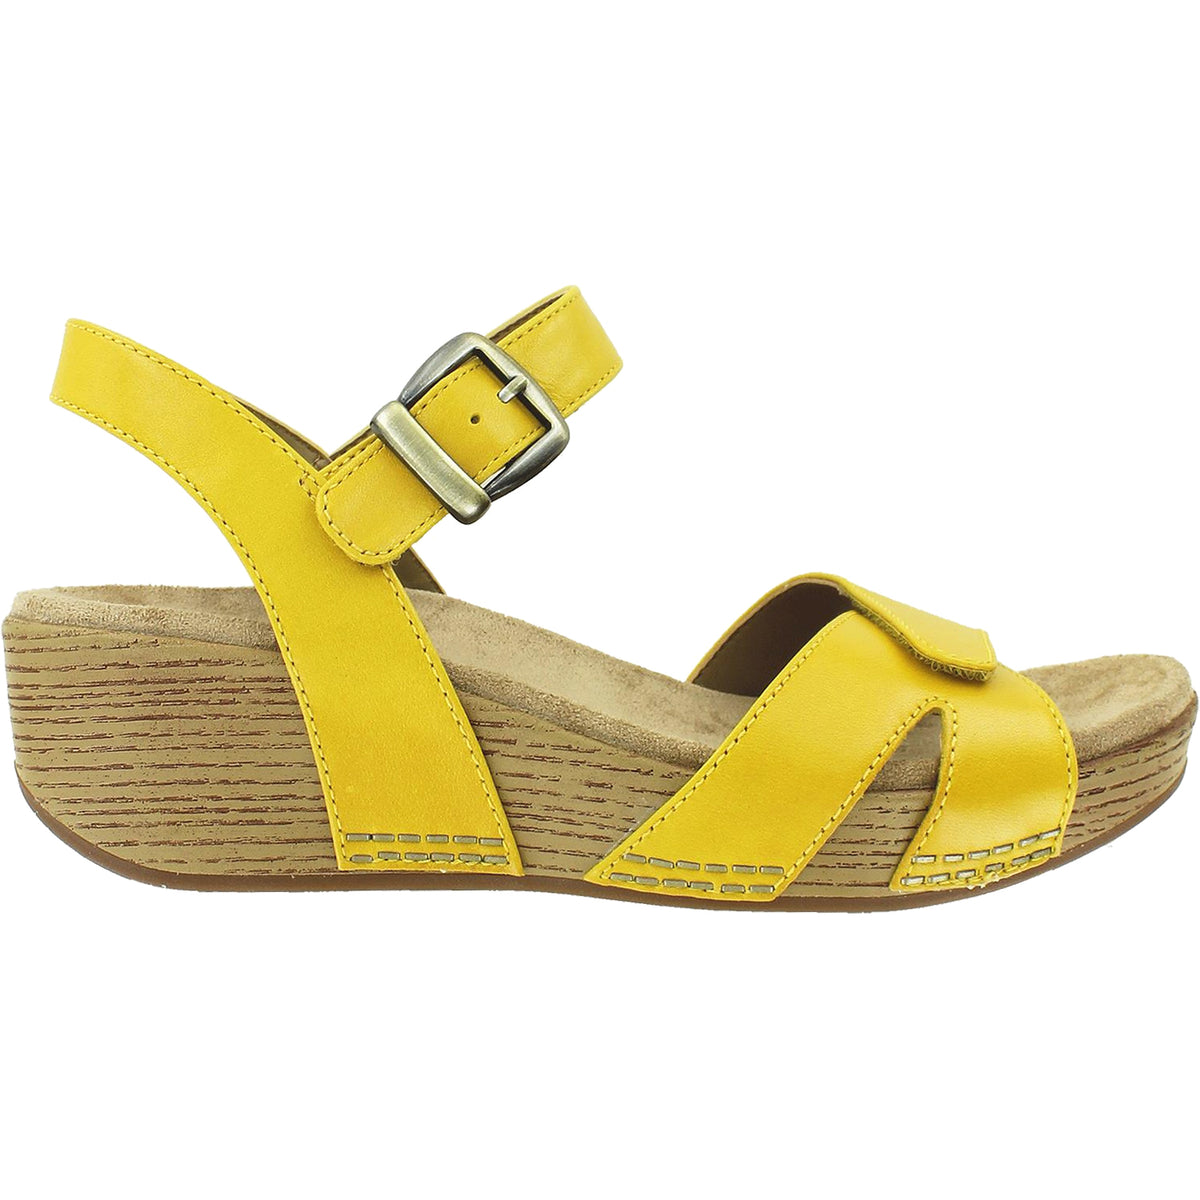 sirene Sequel træk uld over øjnene Dansko Laurie Yellow | Women's Sandals | Footwear etc.